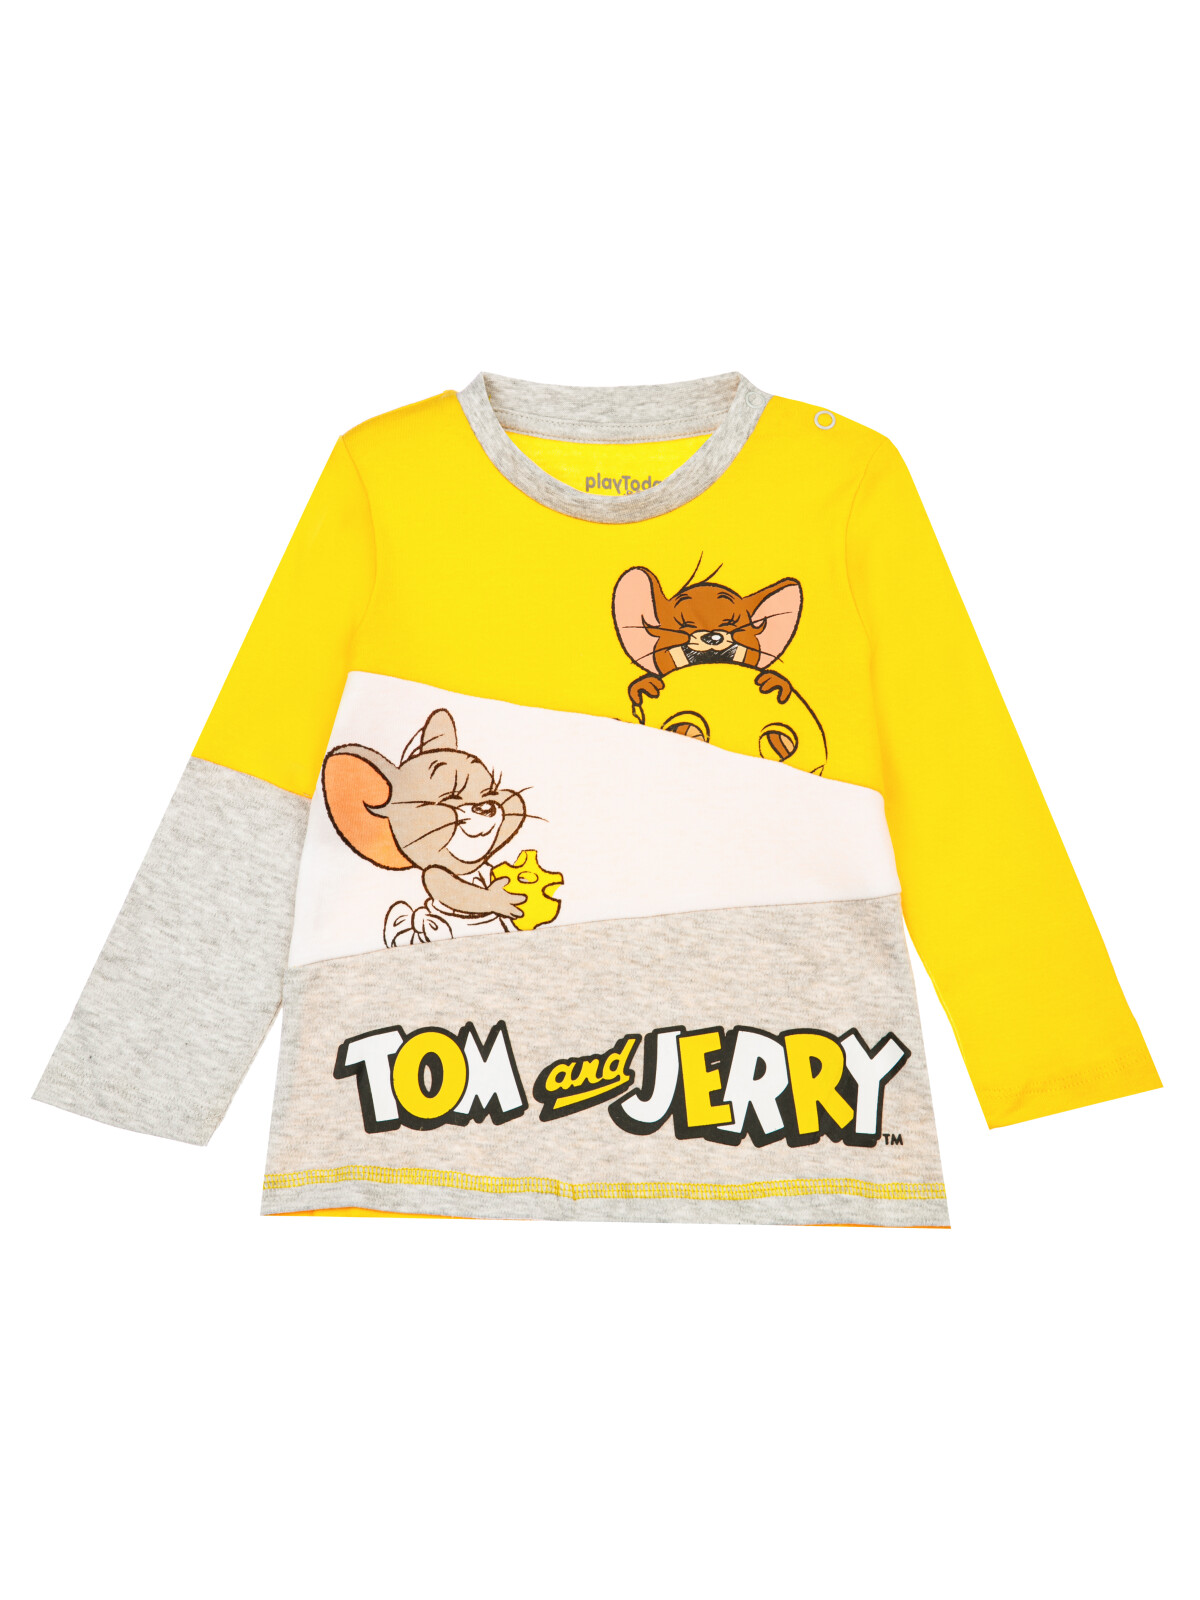 детская для мальчиков PlayToday (футболка), серый меланж,жёлтый,белый, 86